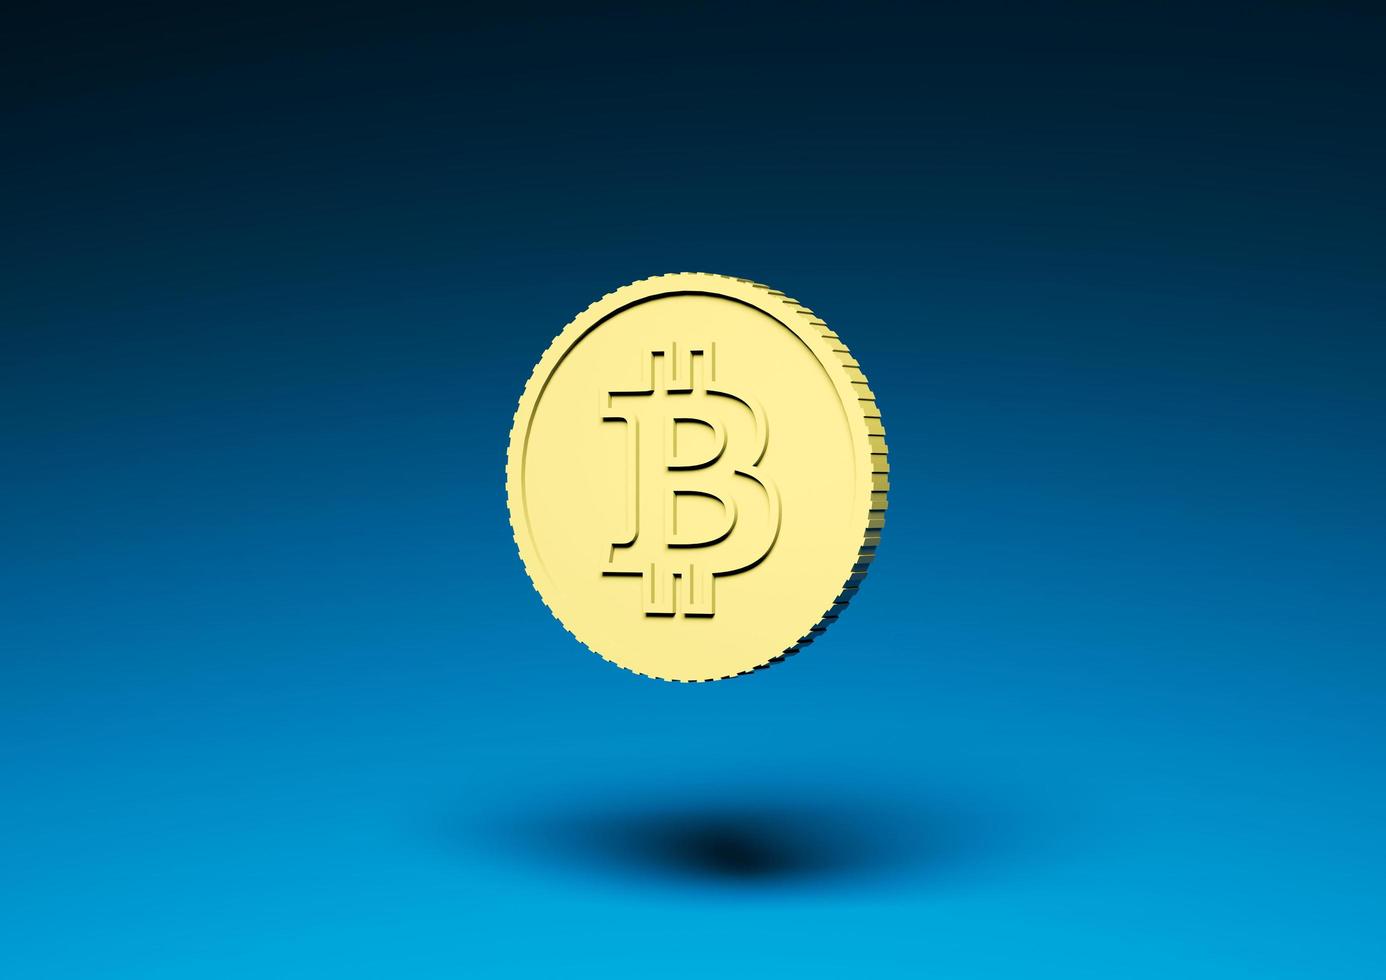 gult bitcoinmynt på en blå bakgrund foto